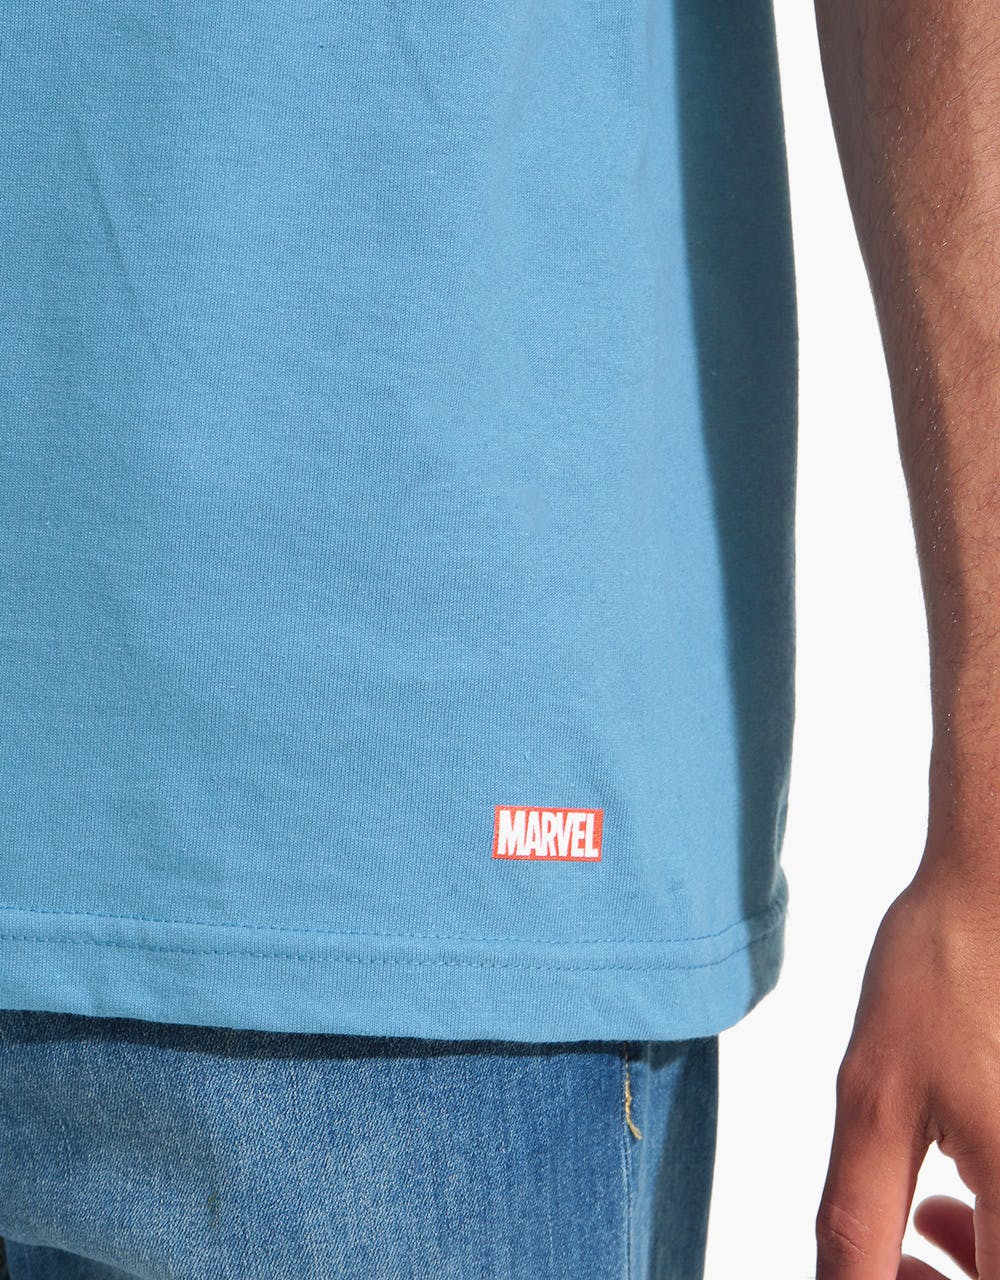 Primitive x Moebius Silver Surfer T-Shirt - Slate